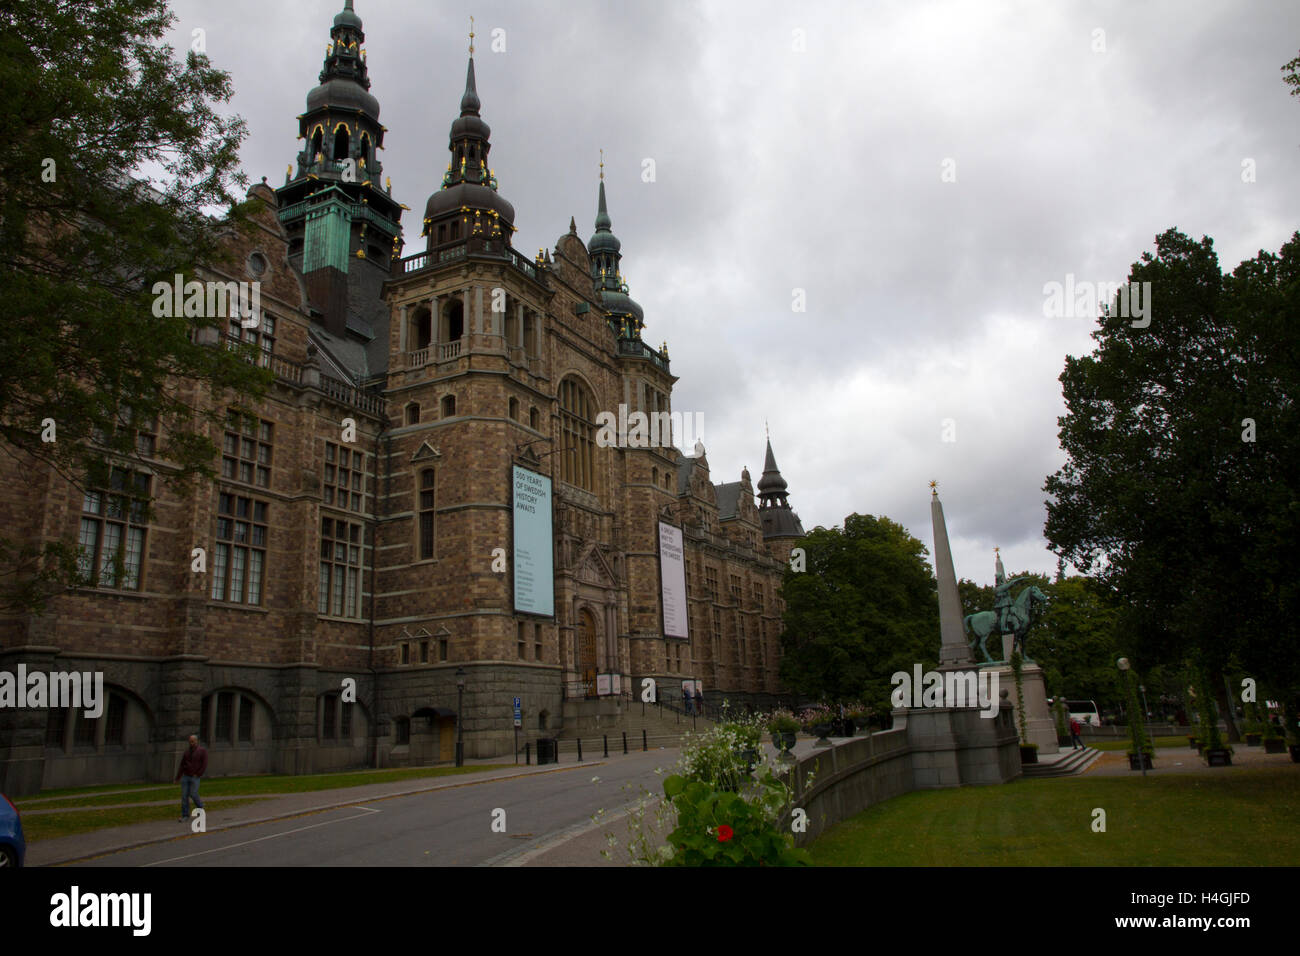 Untergebracht in einem massiven Gebäude, das als ein Renaissance-Ära Palast durchgehen würden, ist das nordische Museum kulturelle Geschichte gewidmet. Stockfoto